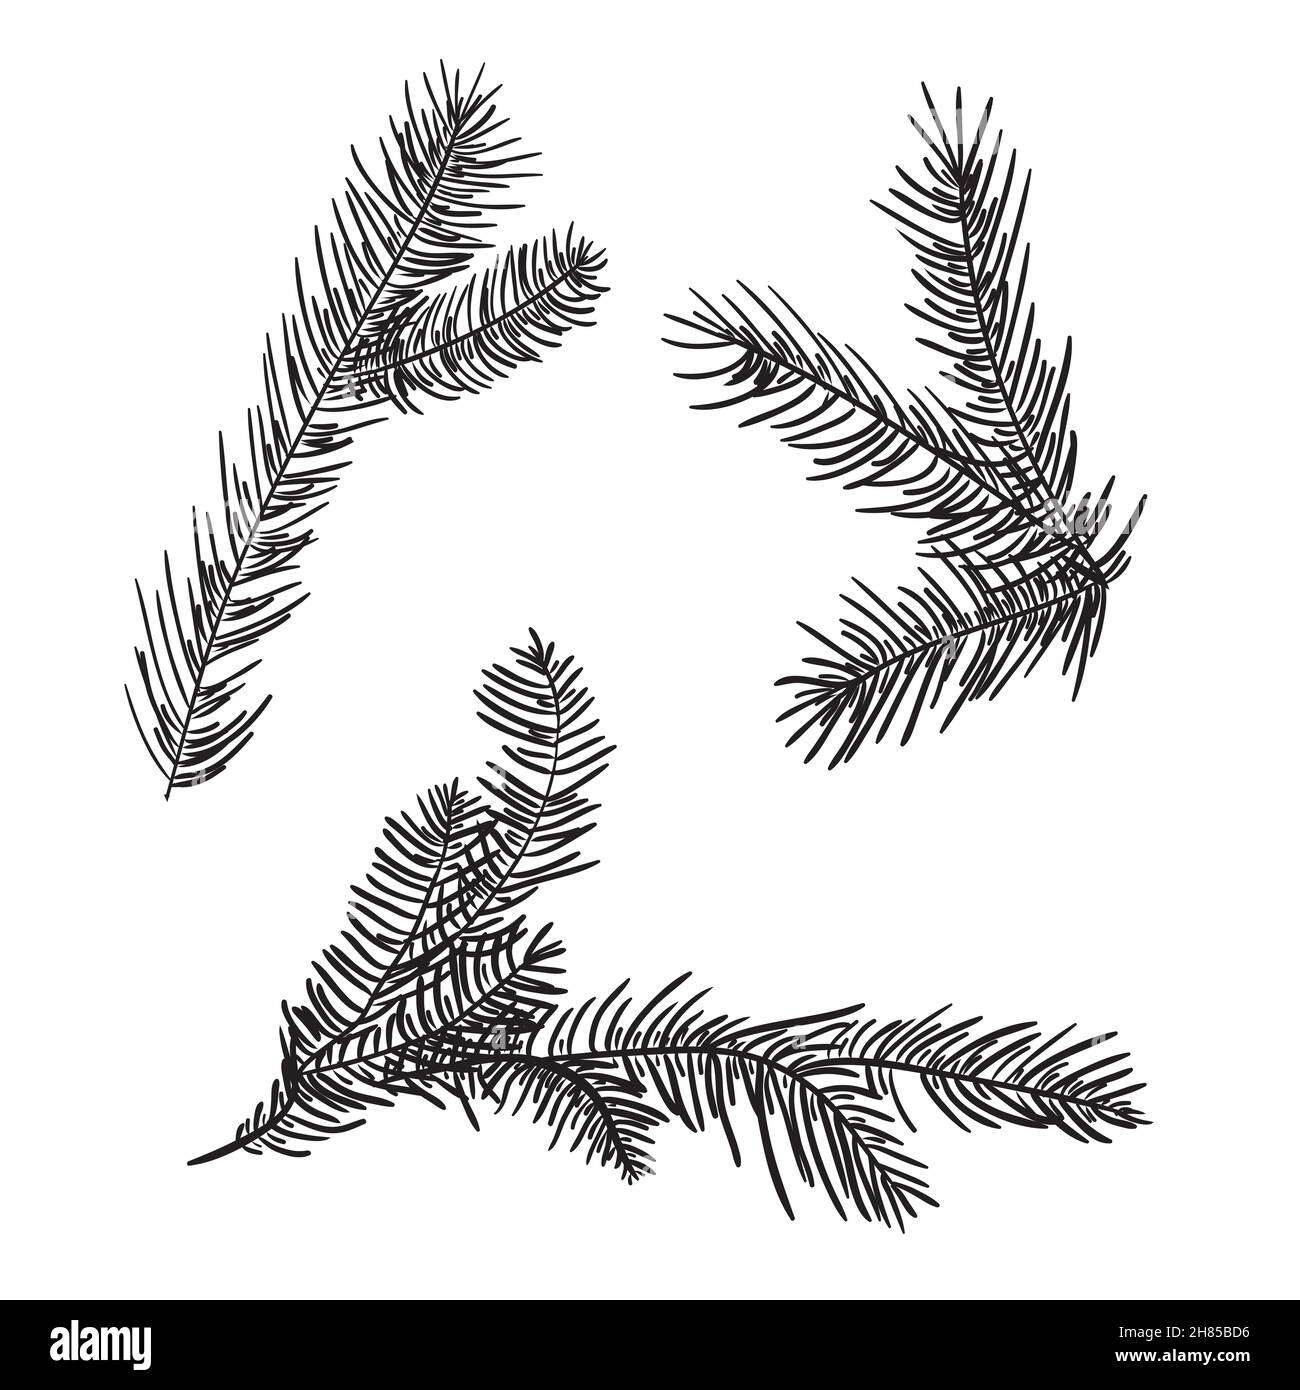 Rami di pino disegnati a mano per la creazione del vostro proprio disegno per Natale o Capodanno. Vettore, illustrazione. Illustrazione Vettoriale